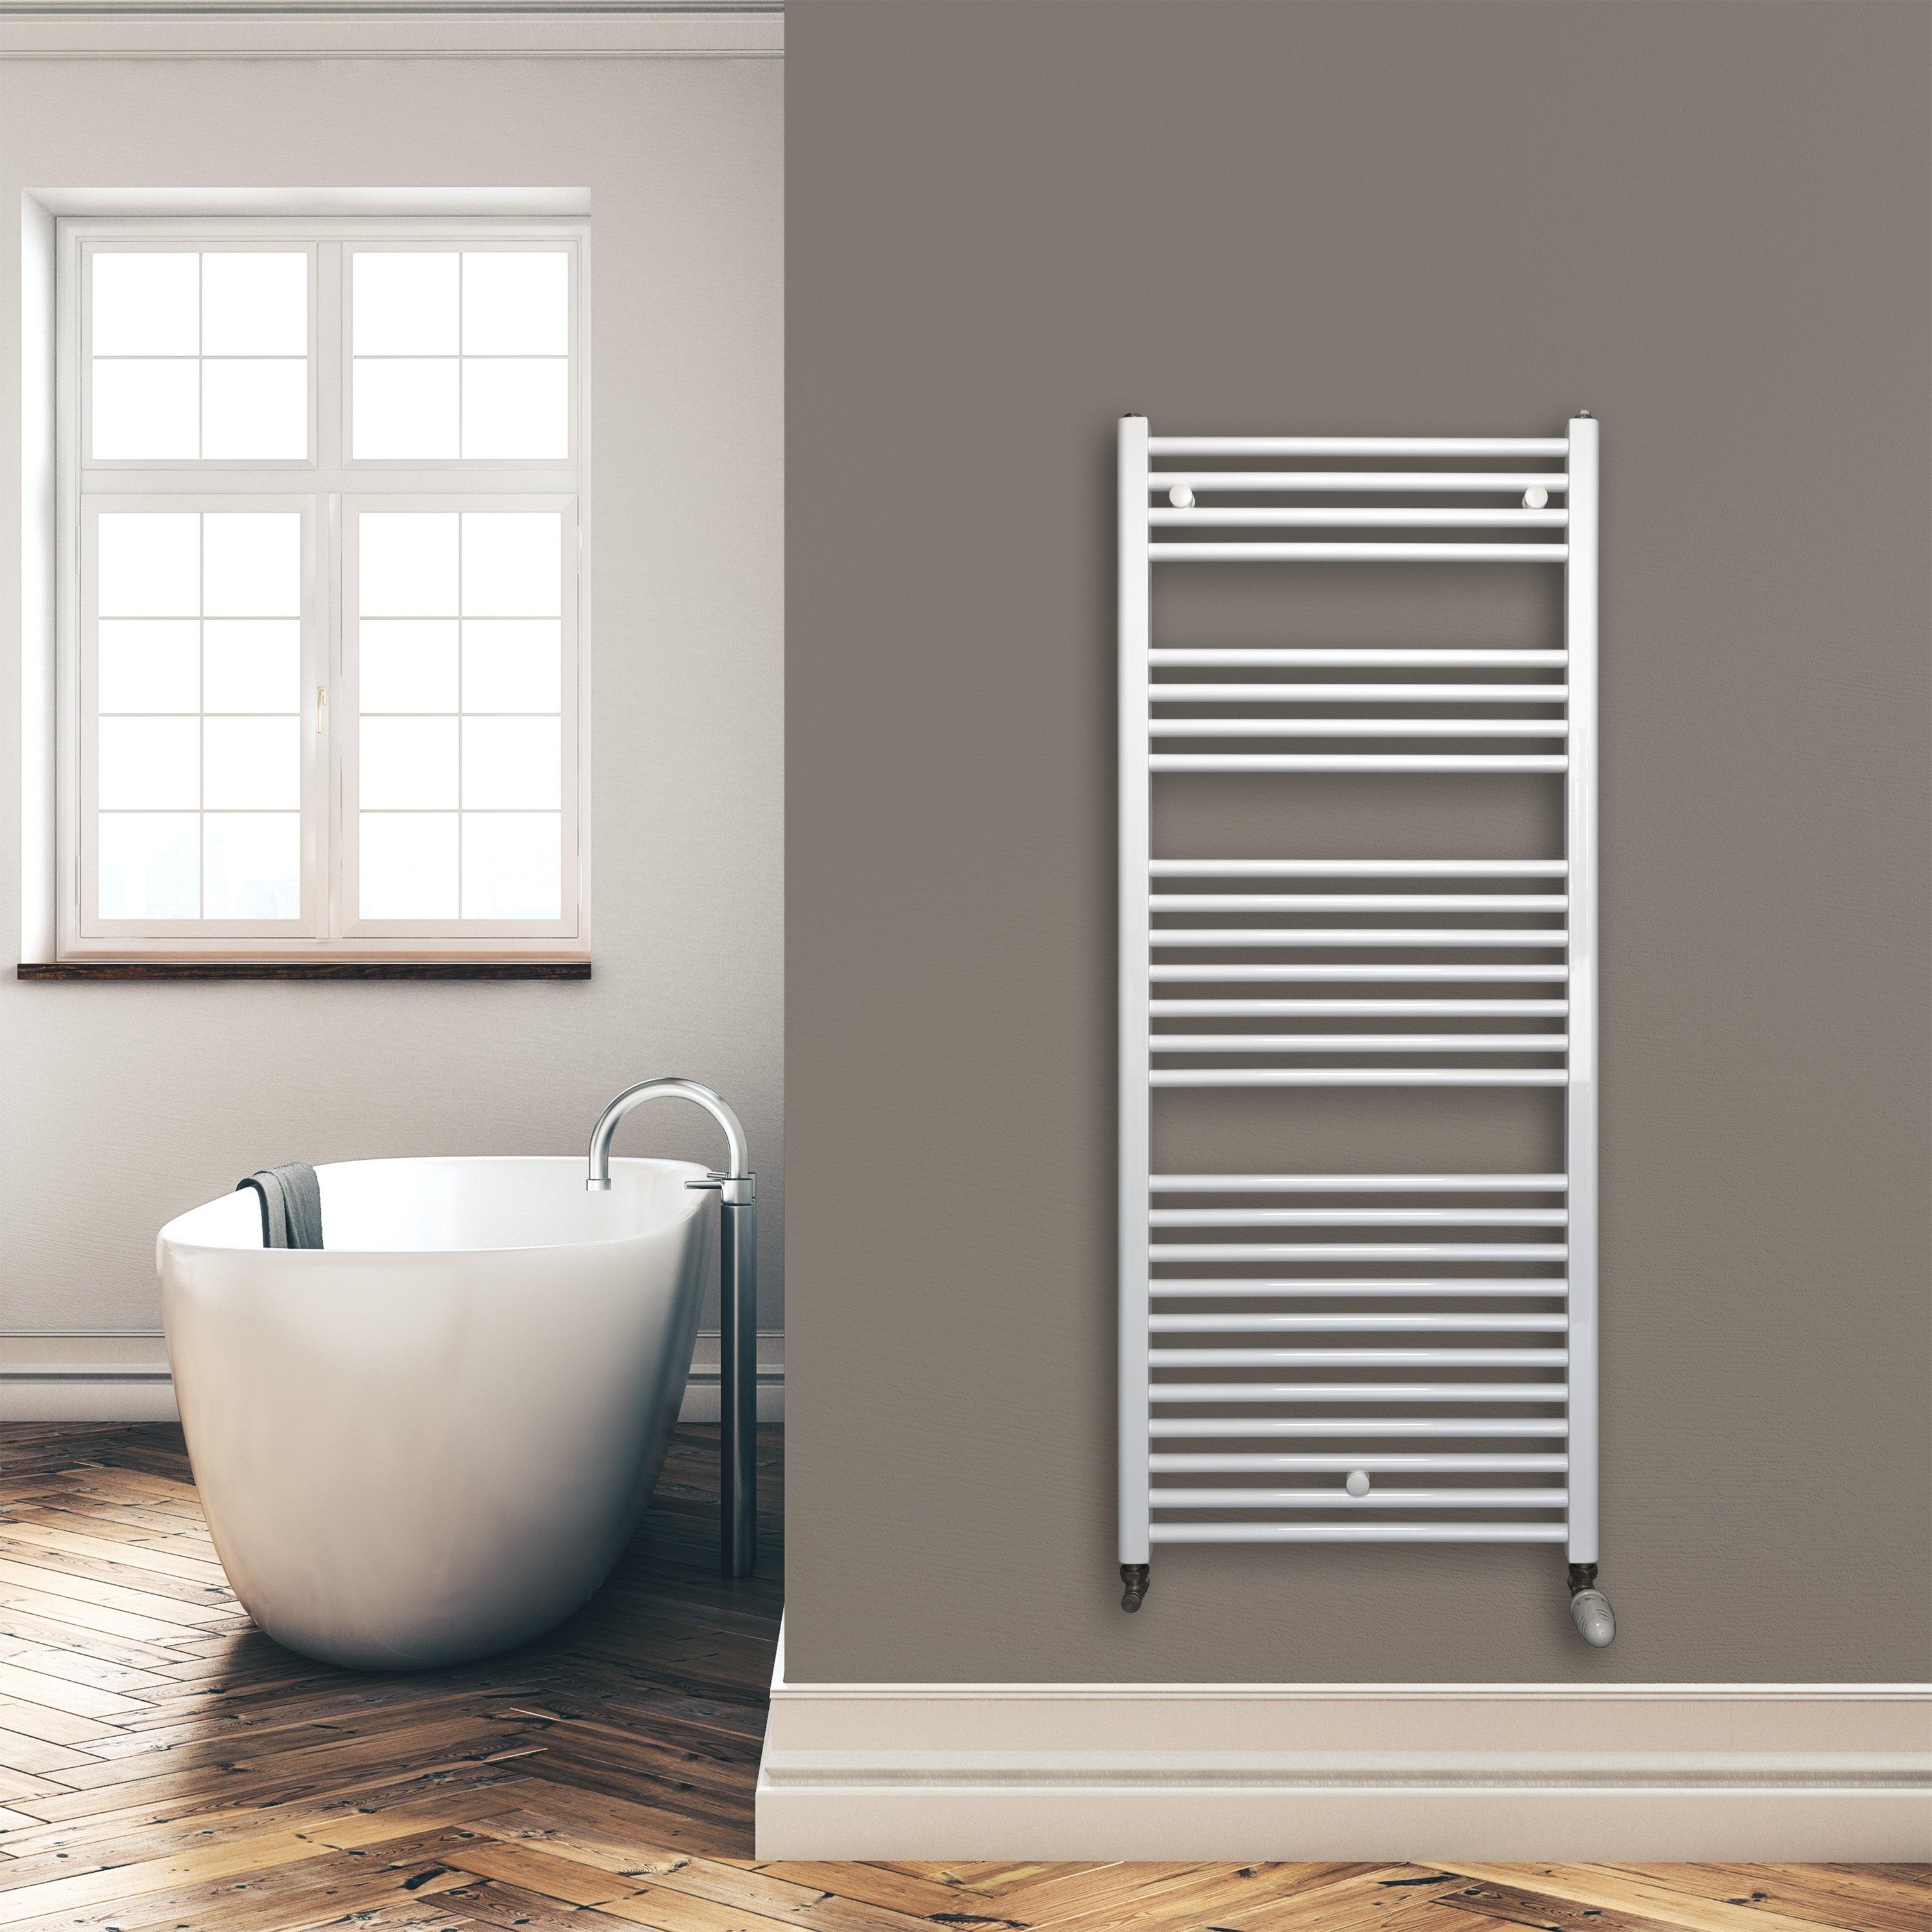 Badheizkörper 1424 x 600 mm gerade mit Standardanschluss Handtuchhalter Badezimmer Heizung Handtuchwärmer weiß Montagebeispiel - heizkoerper.shop